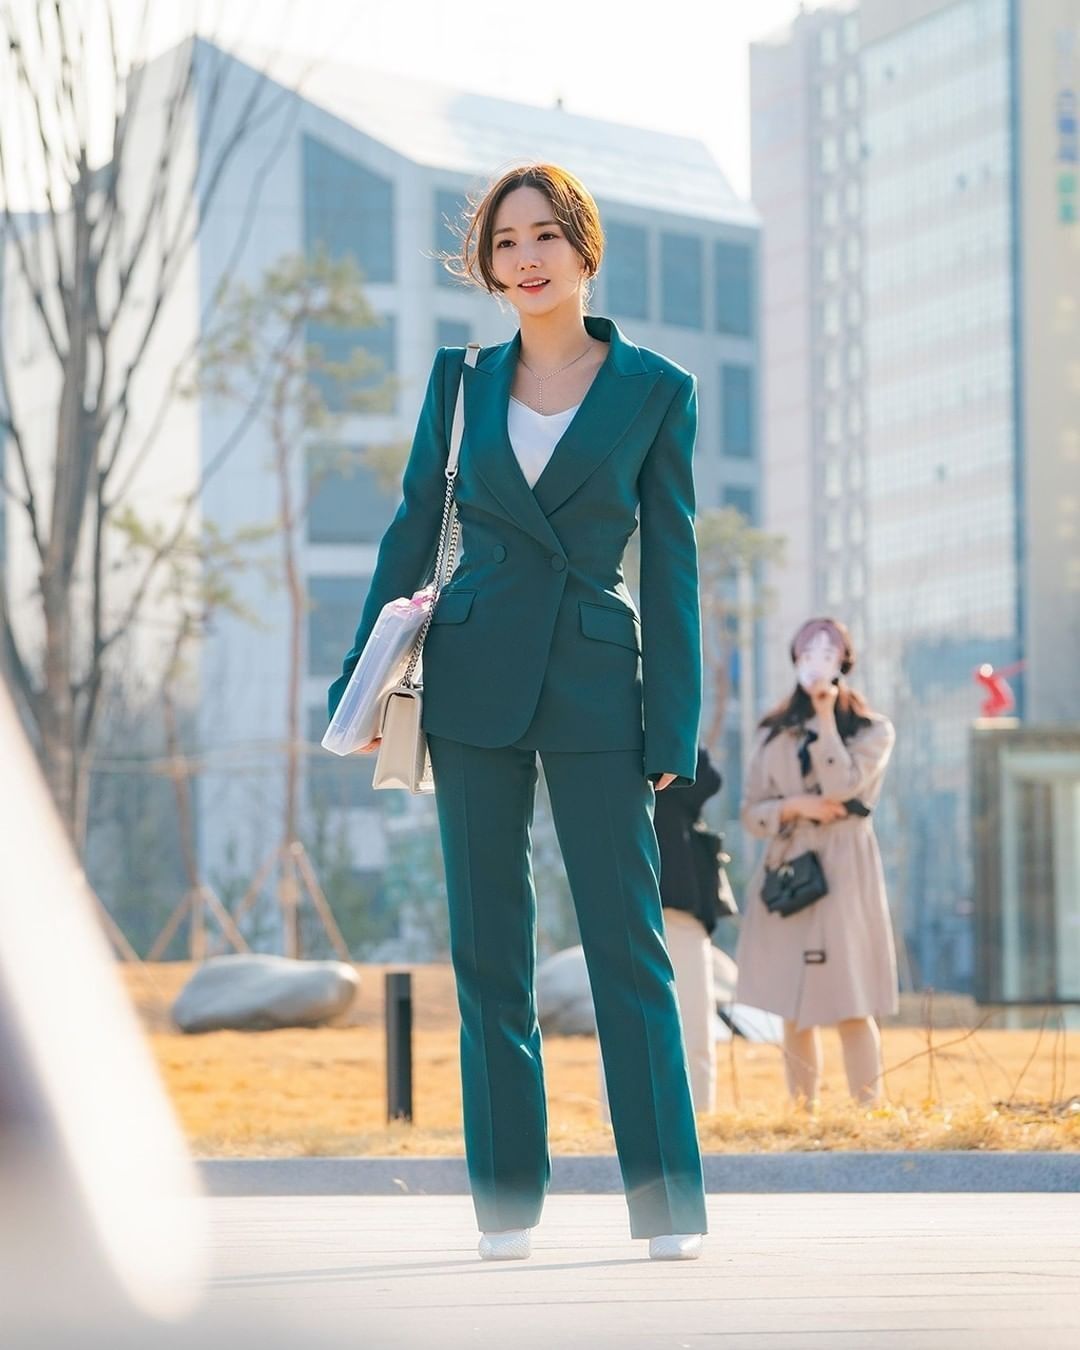 Trong 'Bí mật nàng Fangirl', Park Min Young hoá thân thành cô nàng nghiện suit và thường xuyên diện nguyên bộ từ đầu đến chân, outfit này tạo cảm giác quyền lực vô cùng.